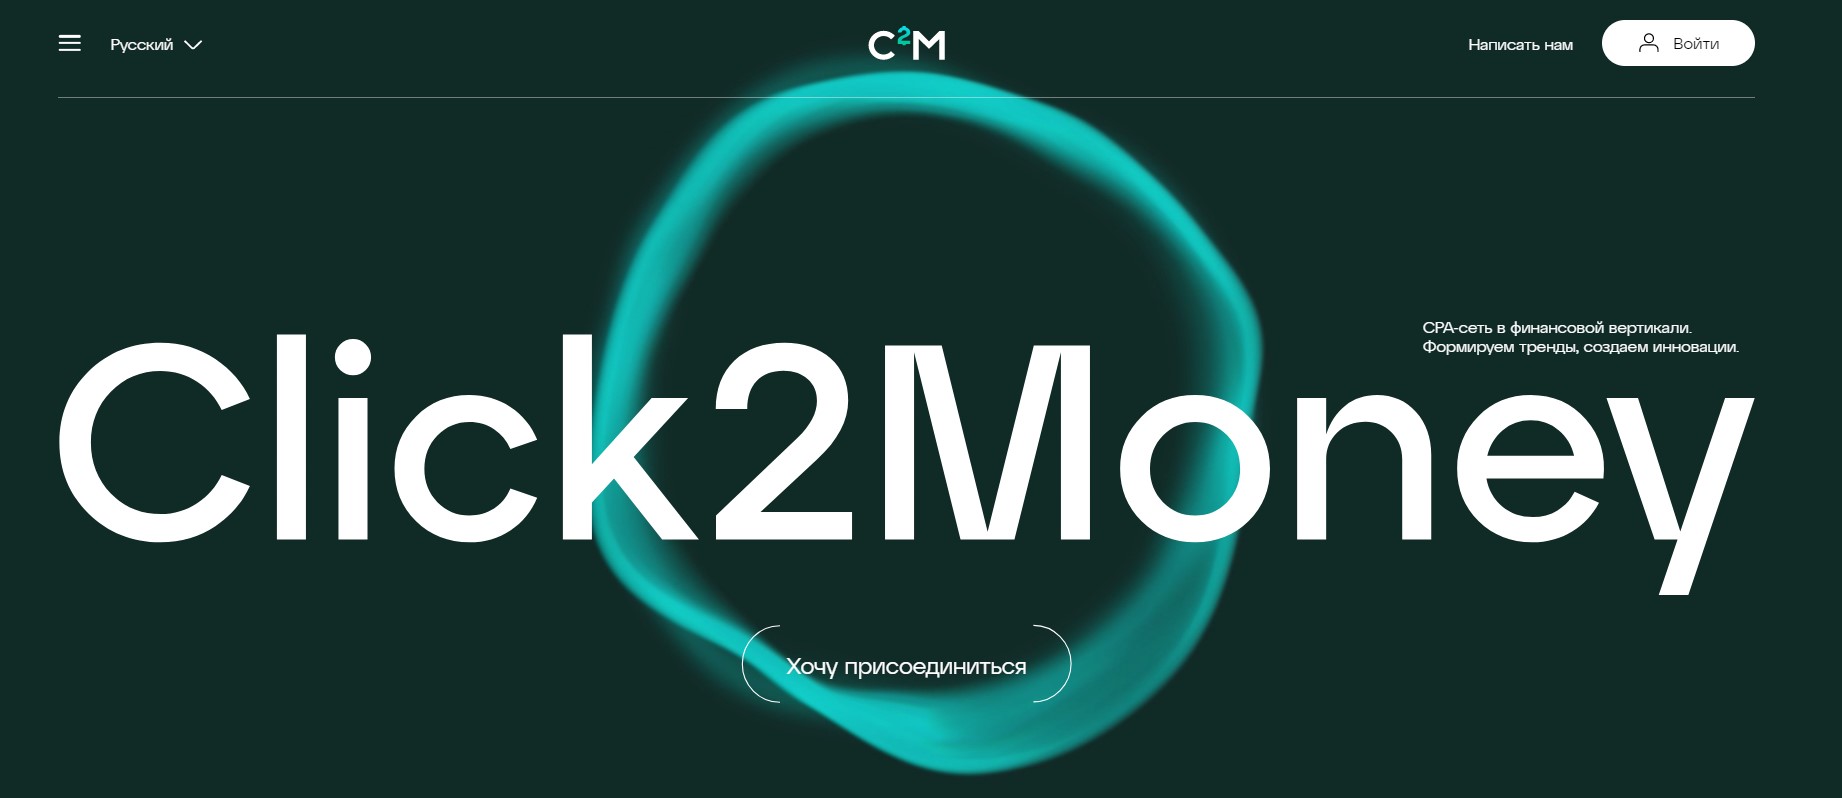 Click2Money — отзывы и обзор партнерской сети